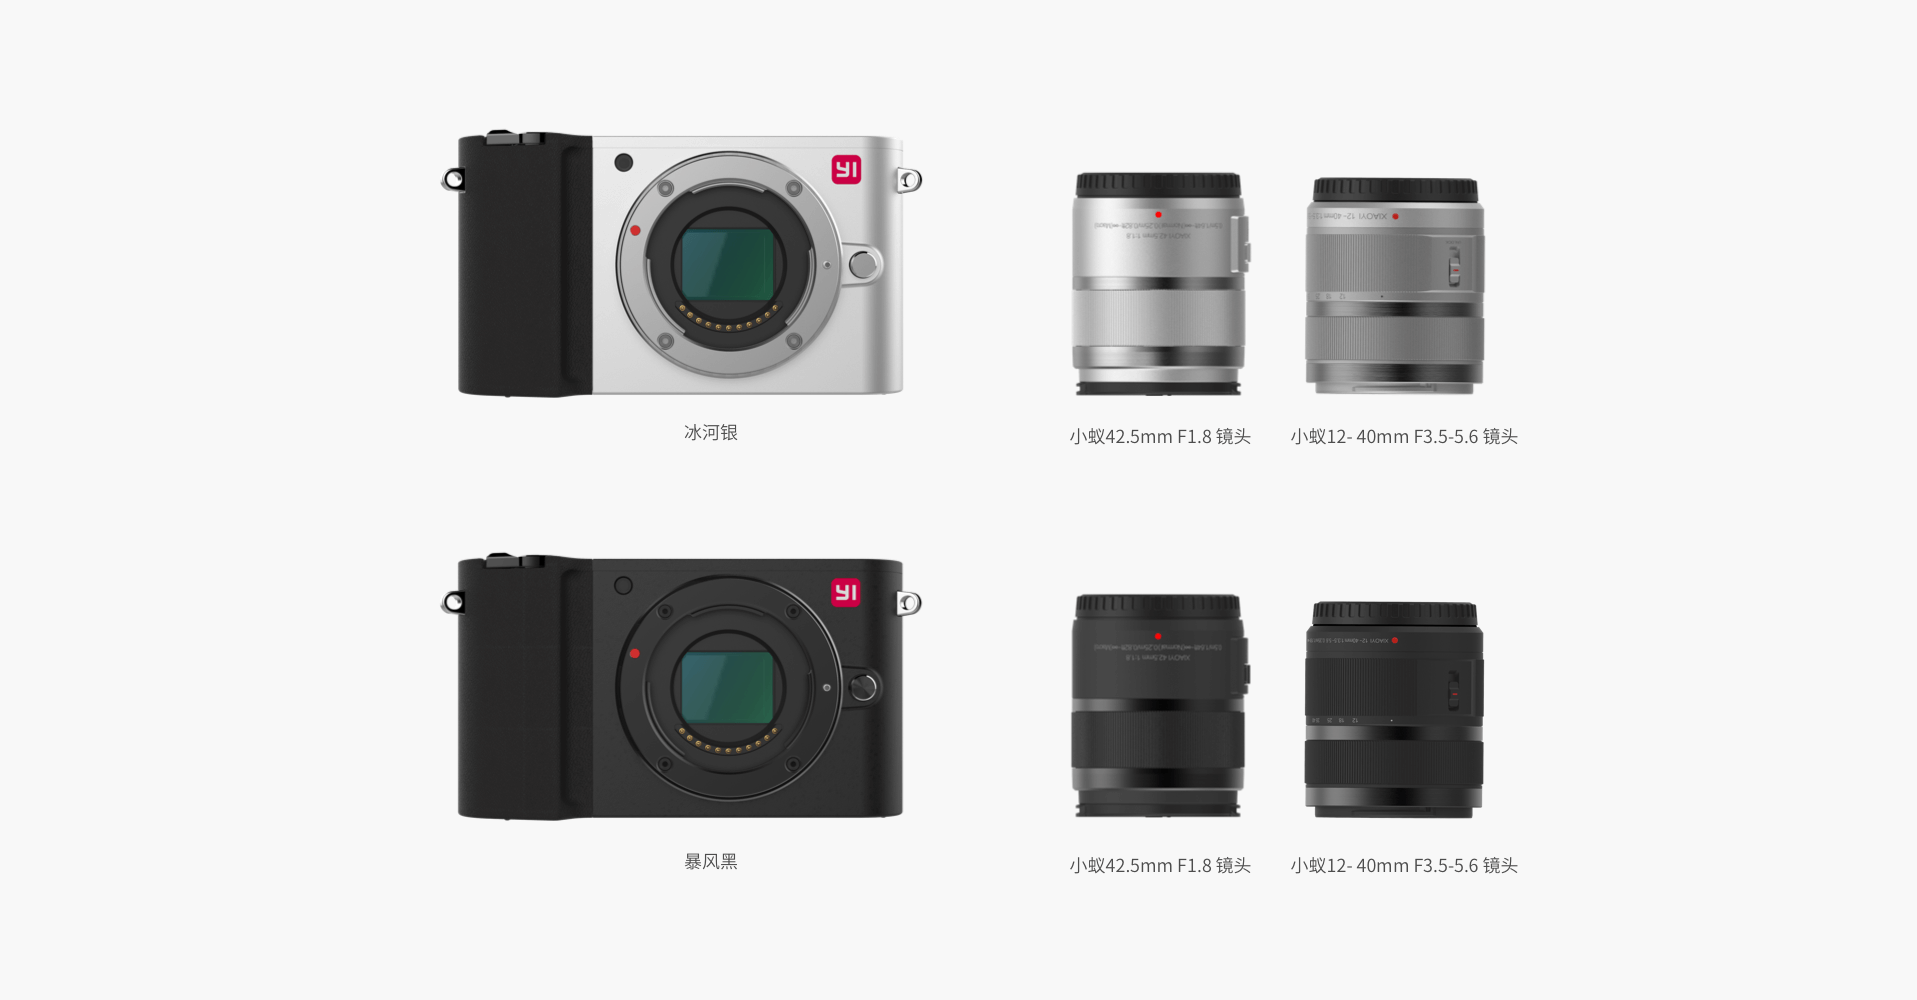 «Leica за $330»: Представлена беззеркальная камера Xiaomi XiaoYi M1 стандарта Micro Four Thirds с возможностью формирования кадров разрешением 50 Мп и поддержкой видео 4K